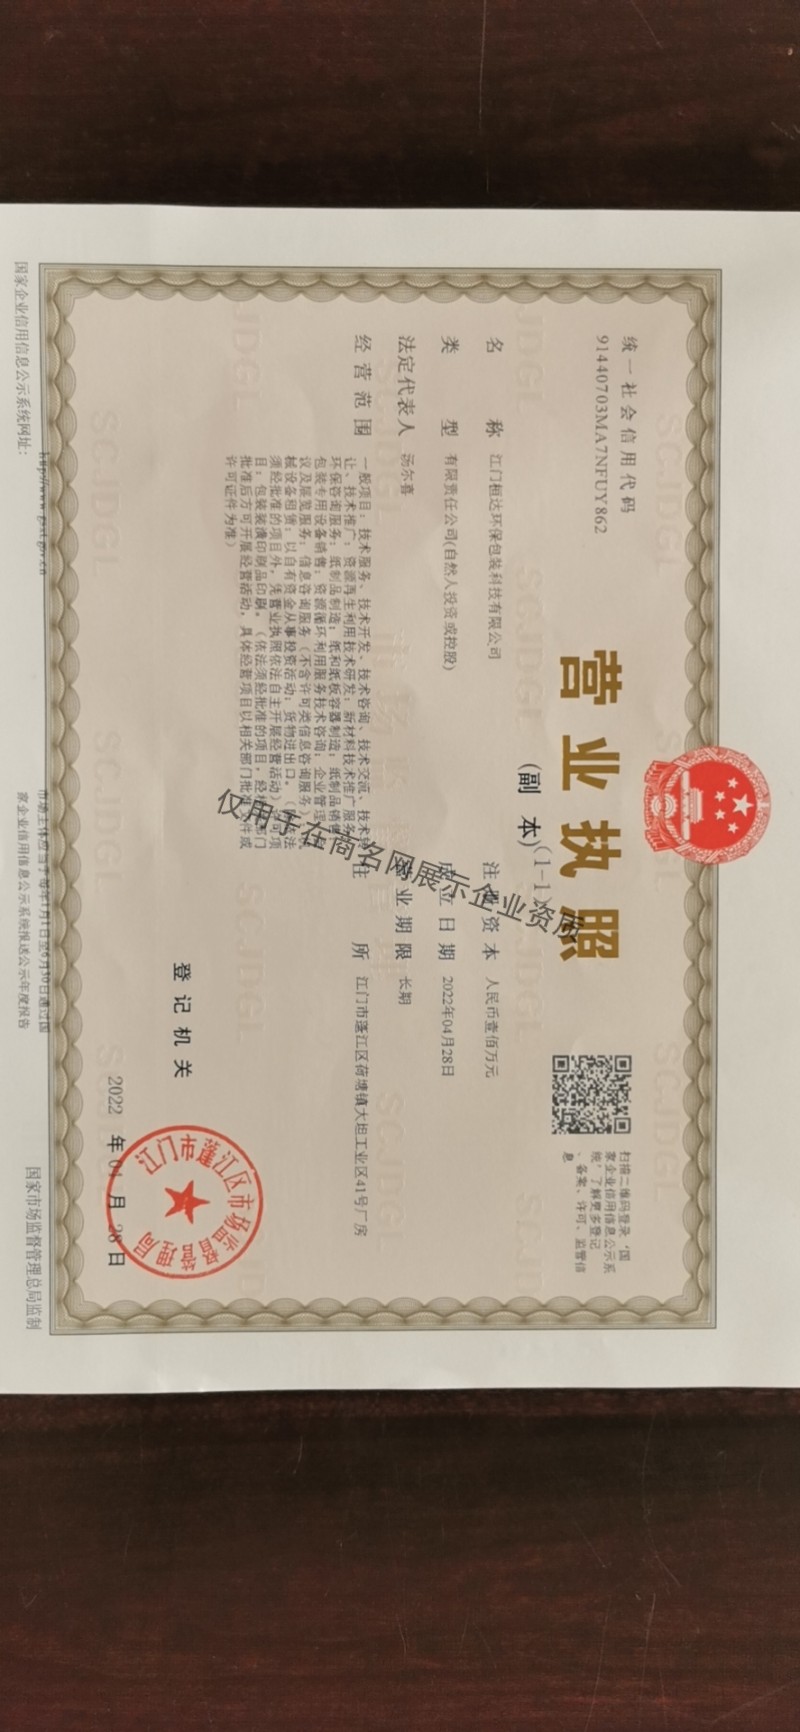 江门桓达环保包装科技有限公司企业证书